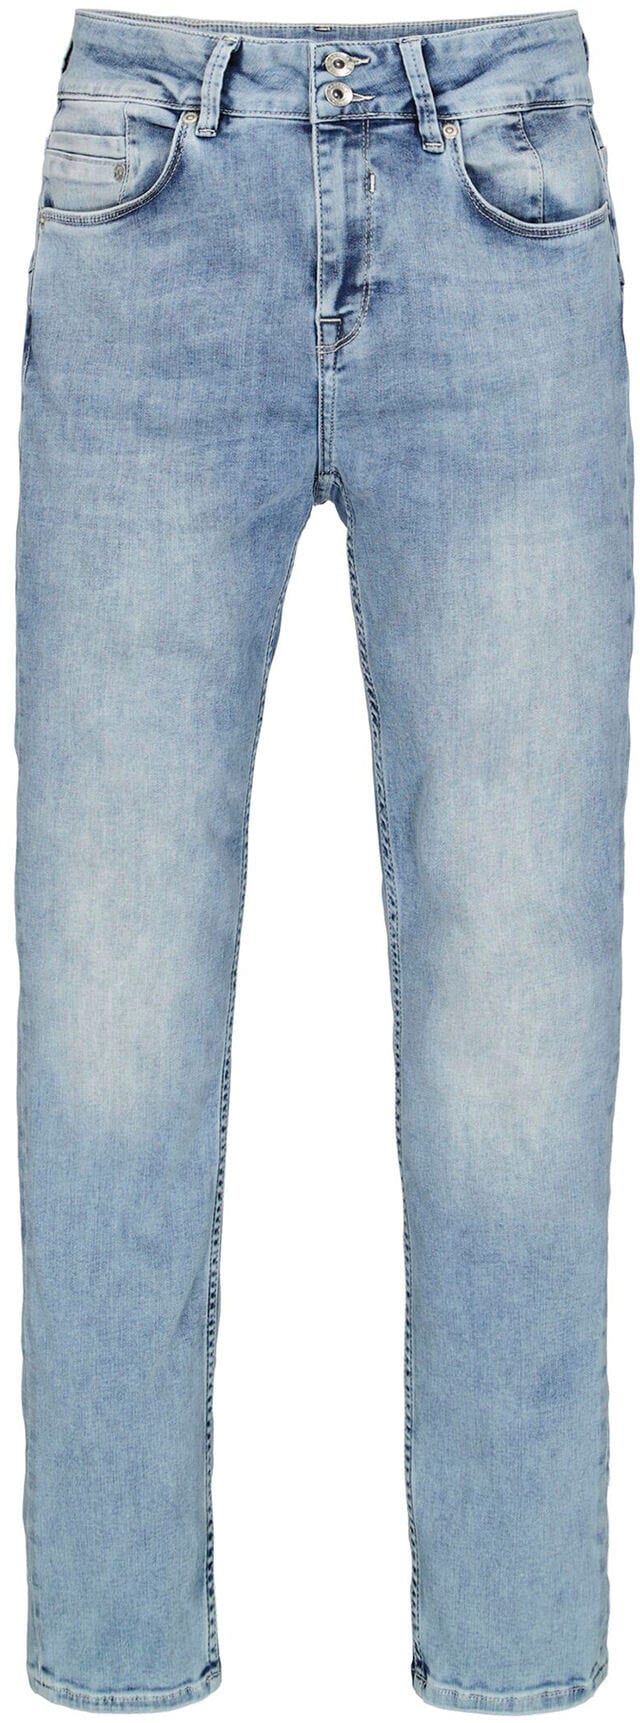 Garcia Slim-fit-Jeans »Caro slim bestellen curved« bei OTTO